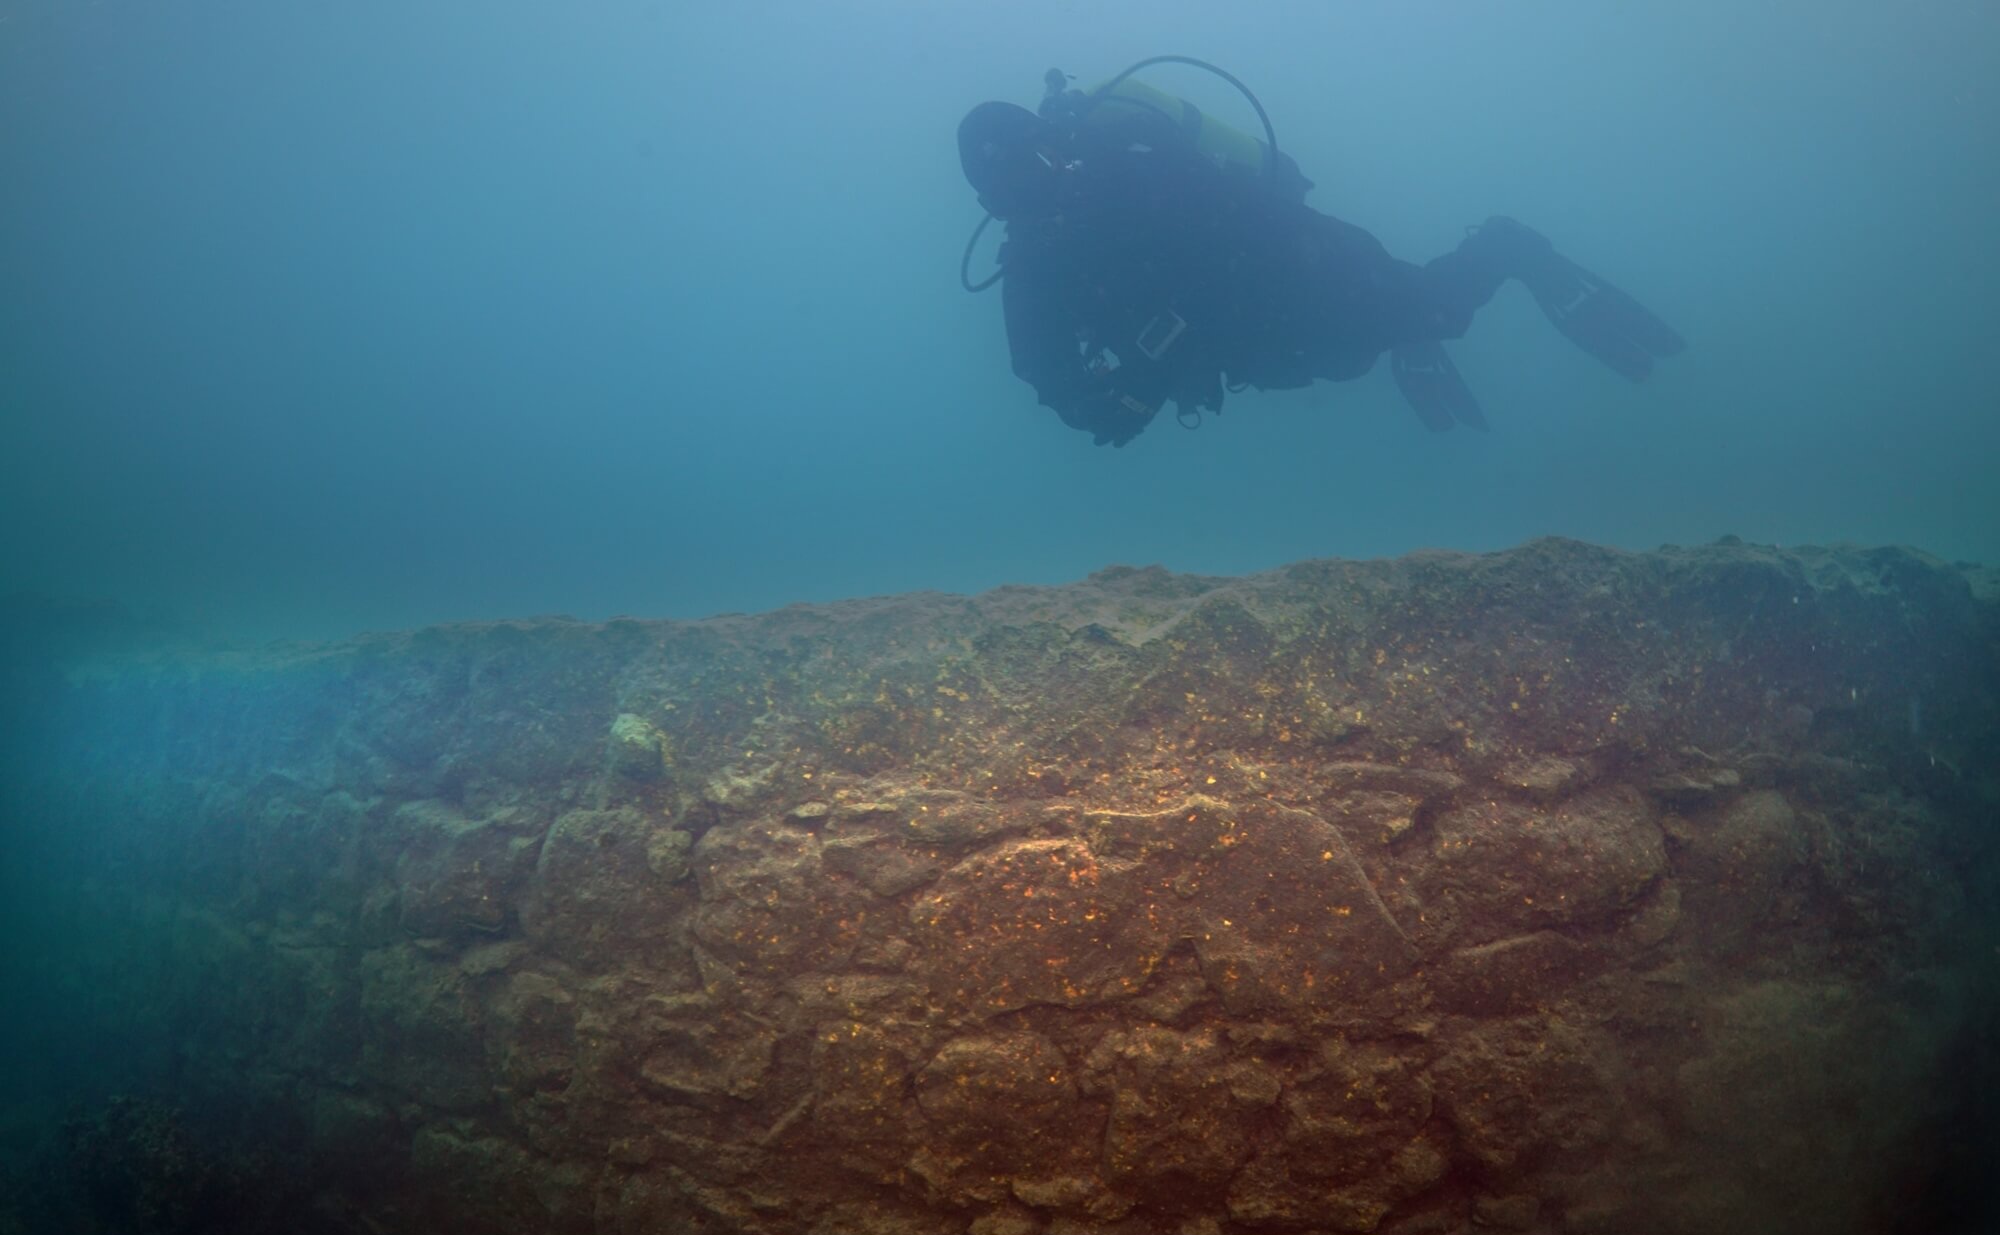 Μυστηριώδες υποβρύχιο κάστρο Ουράρτου 3,000 ετών ανακαλύφθηκε 2